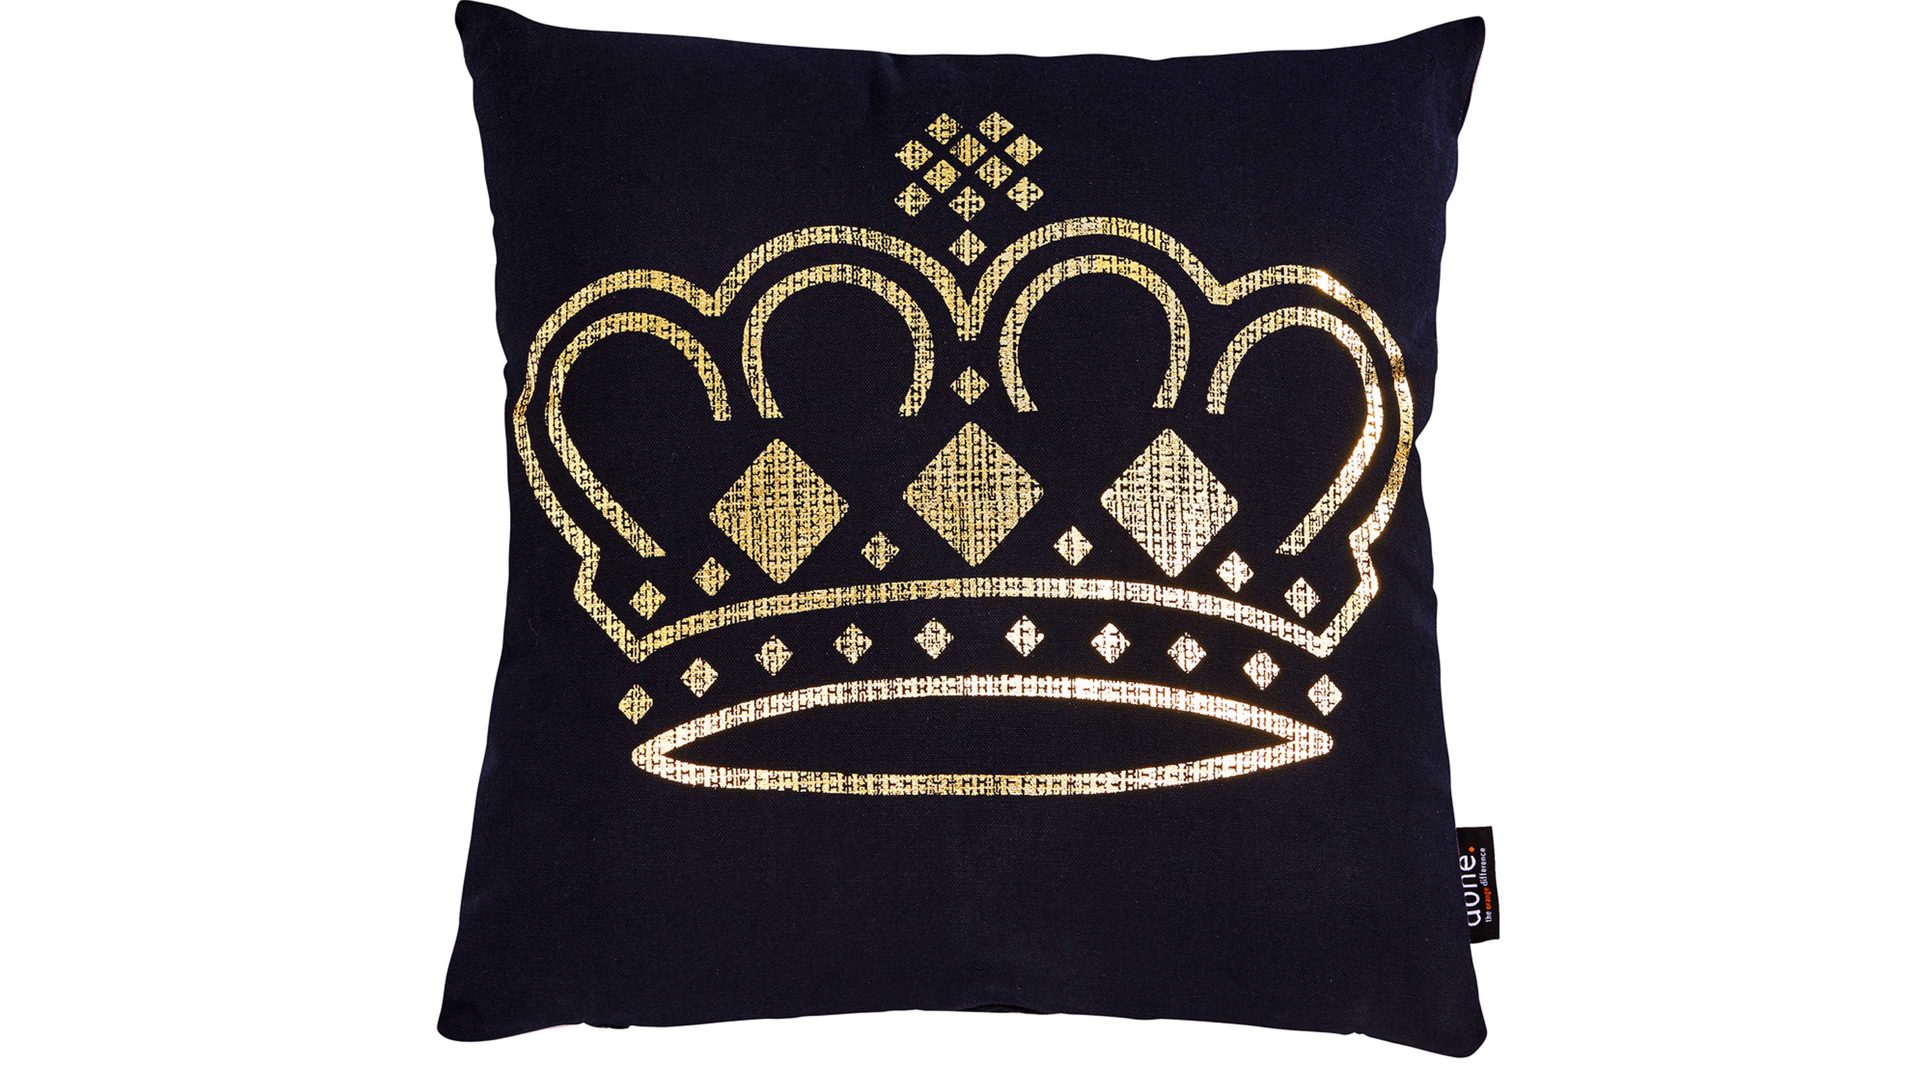 Einzelkissen Done.® aus Baumwolle in Schwarz done.® Kissen Cushion Stone schwarz & Golddruck Crown - ca. 45 x 45 cm